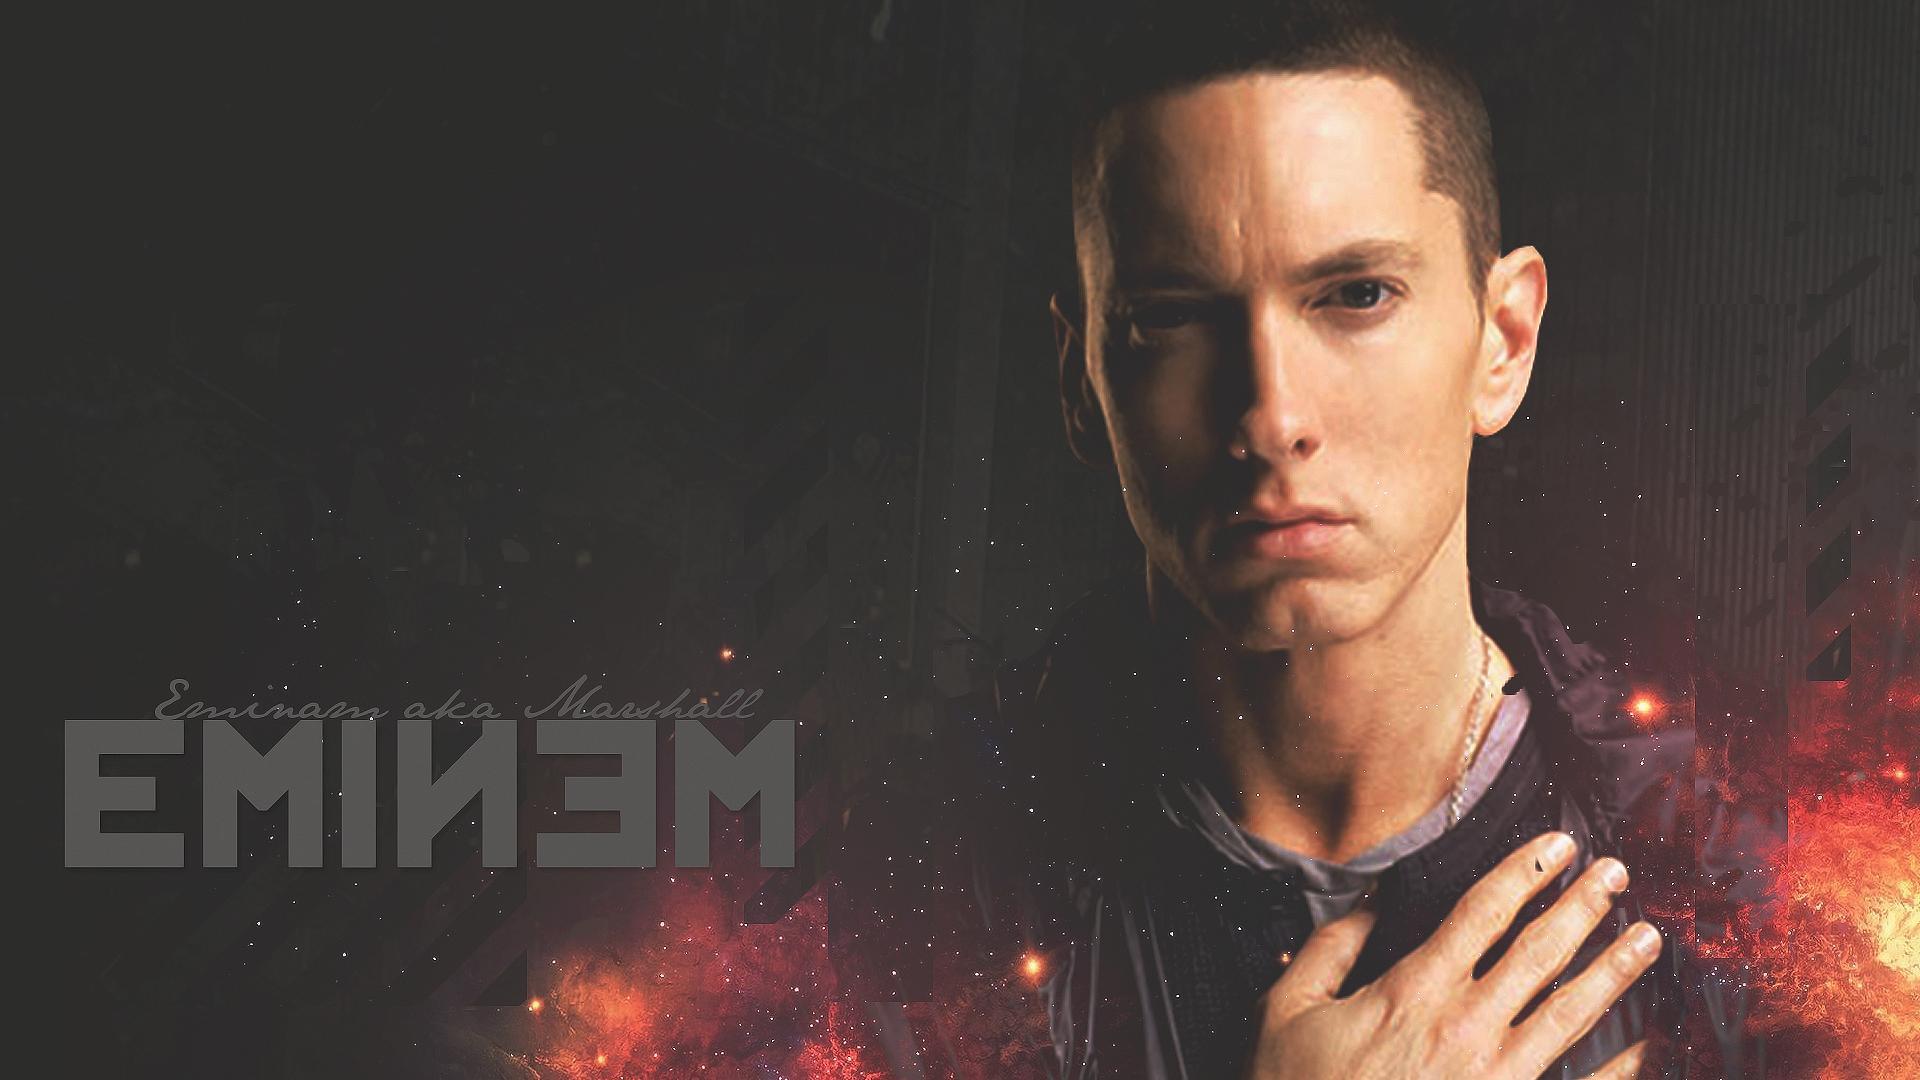 Eminem Background